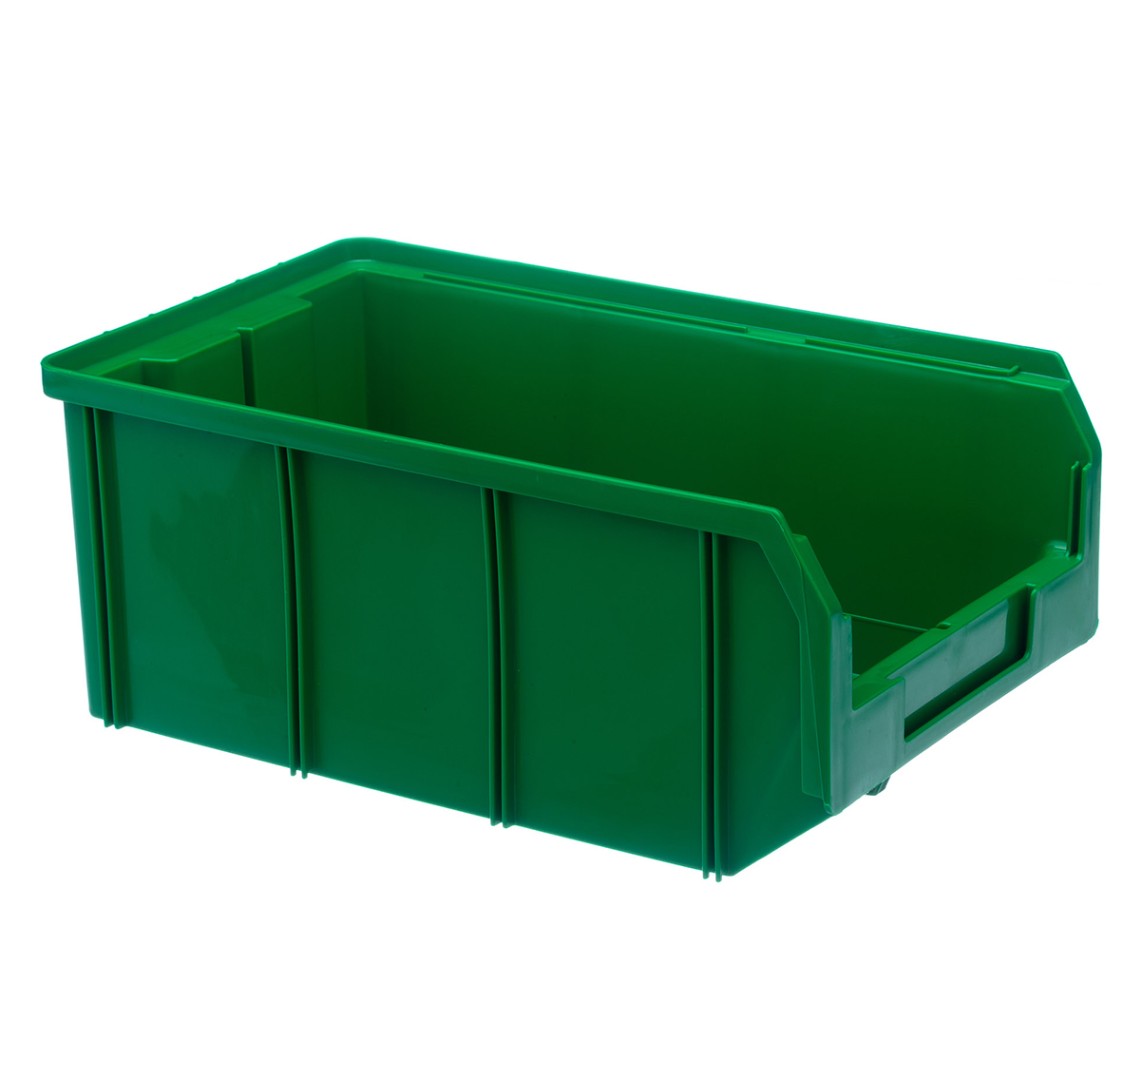 Пластиковый ящик Стелла-техник V-3-зеленый 341х207x143 мм, 9,4 л